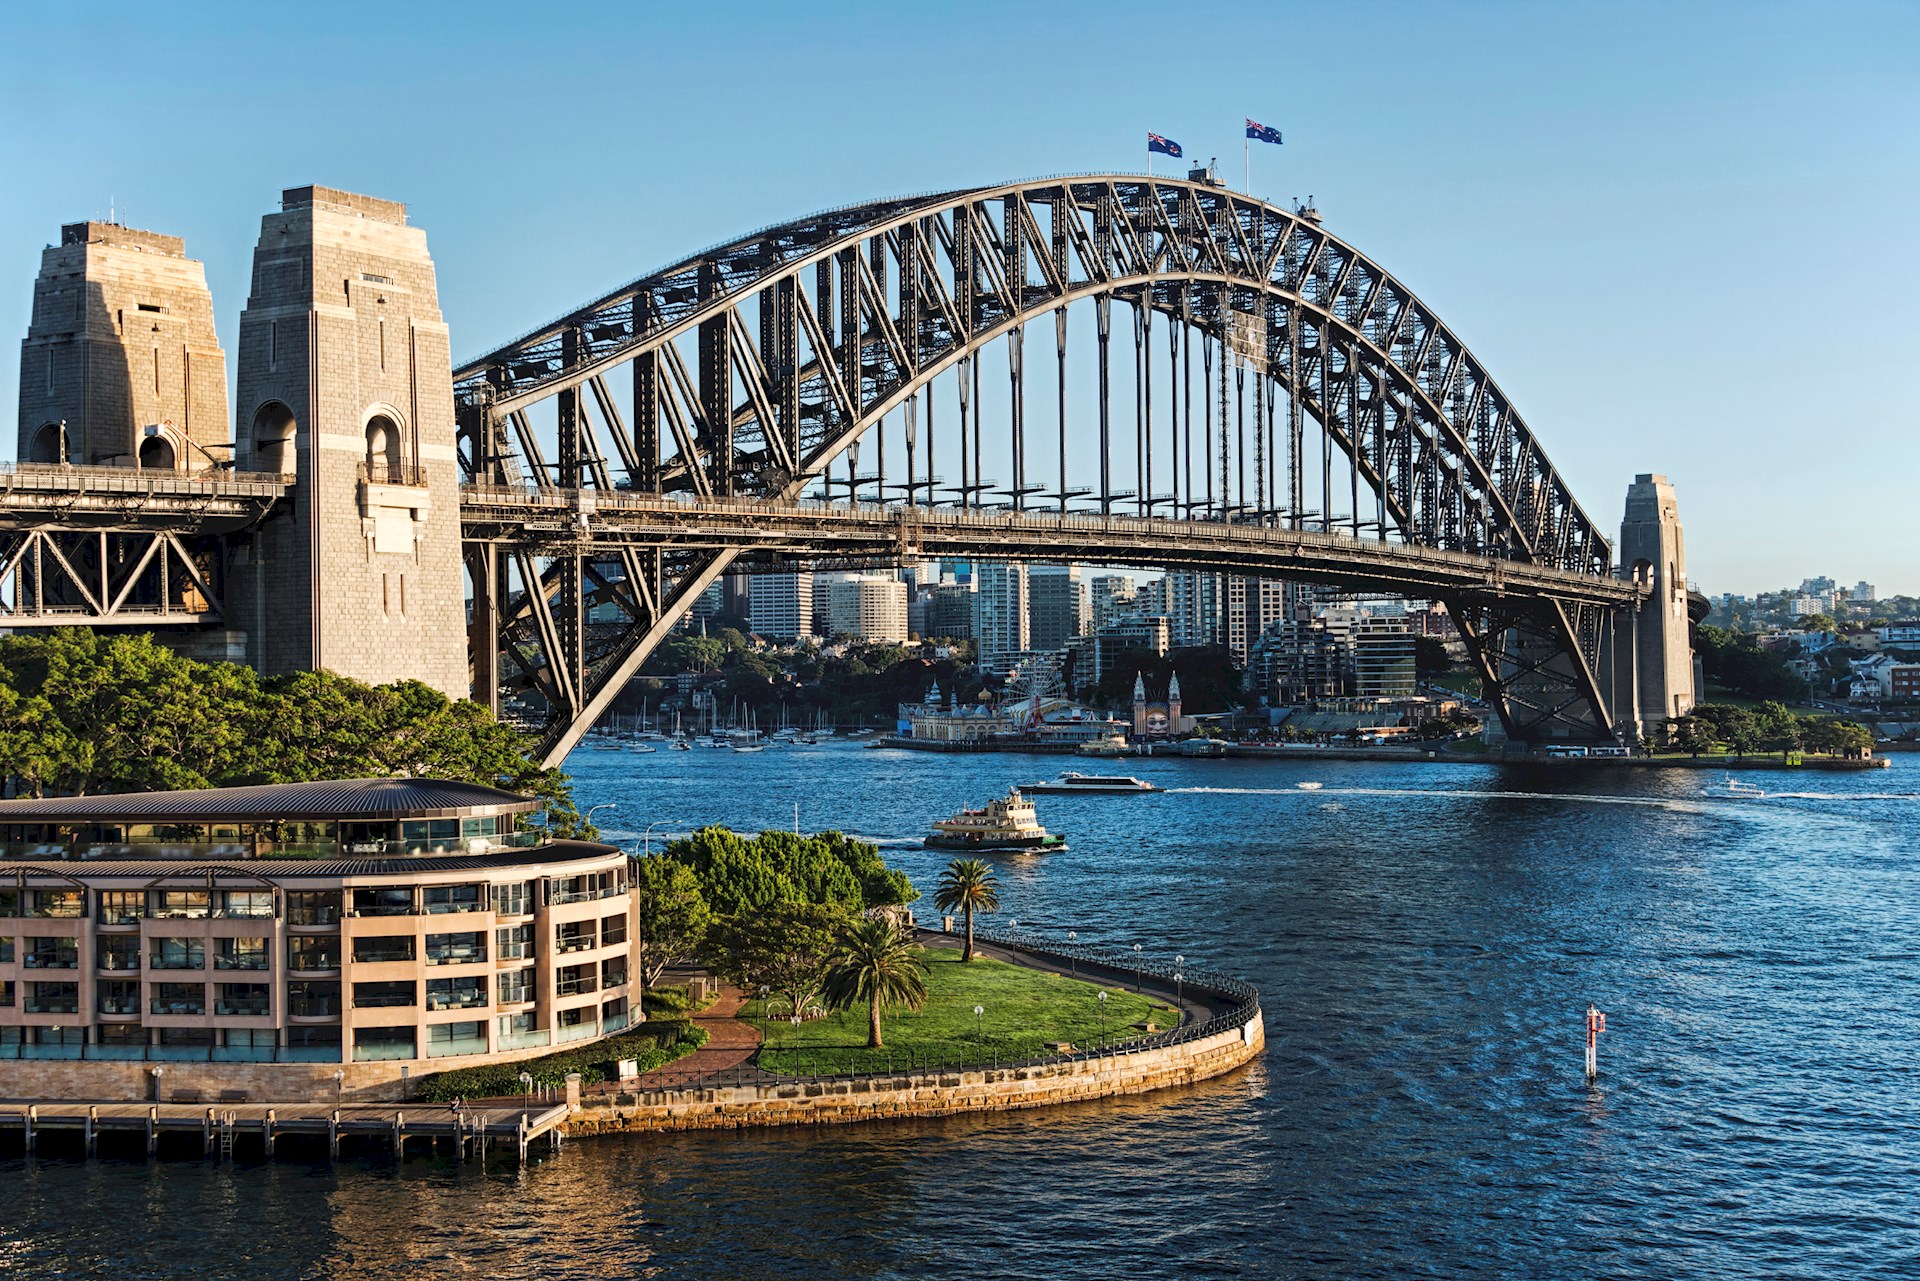 {7114B344-81B5-4E16-AFCD-D320C2CEC126}Sydney Harbour Bridge - Stock image